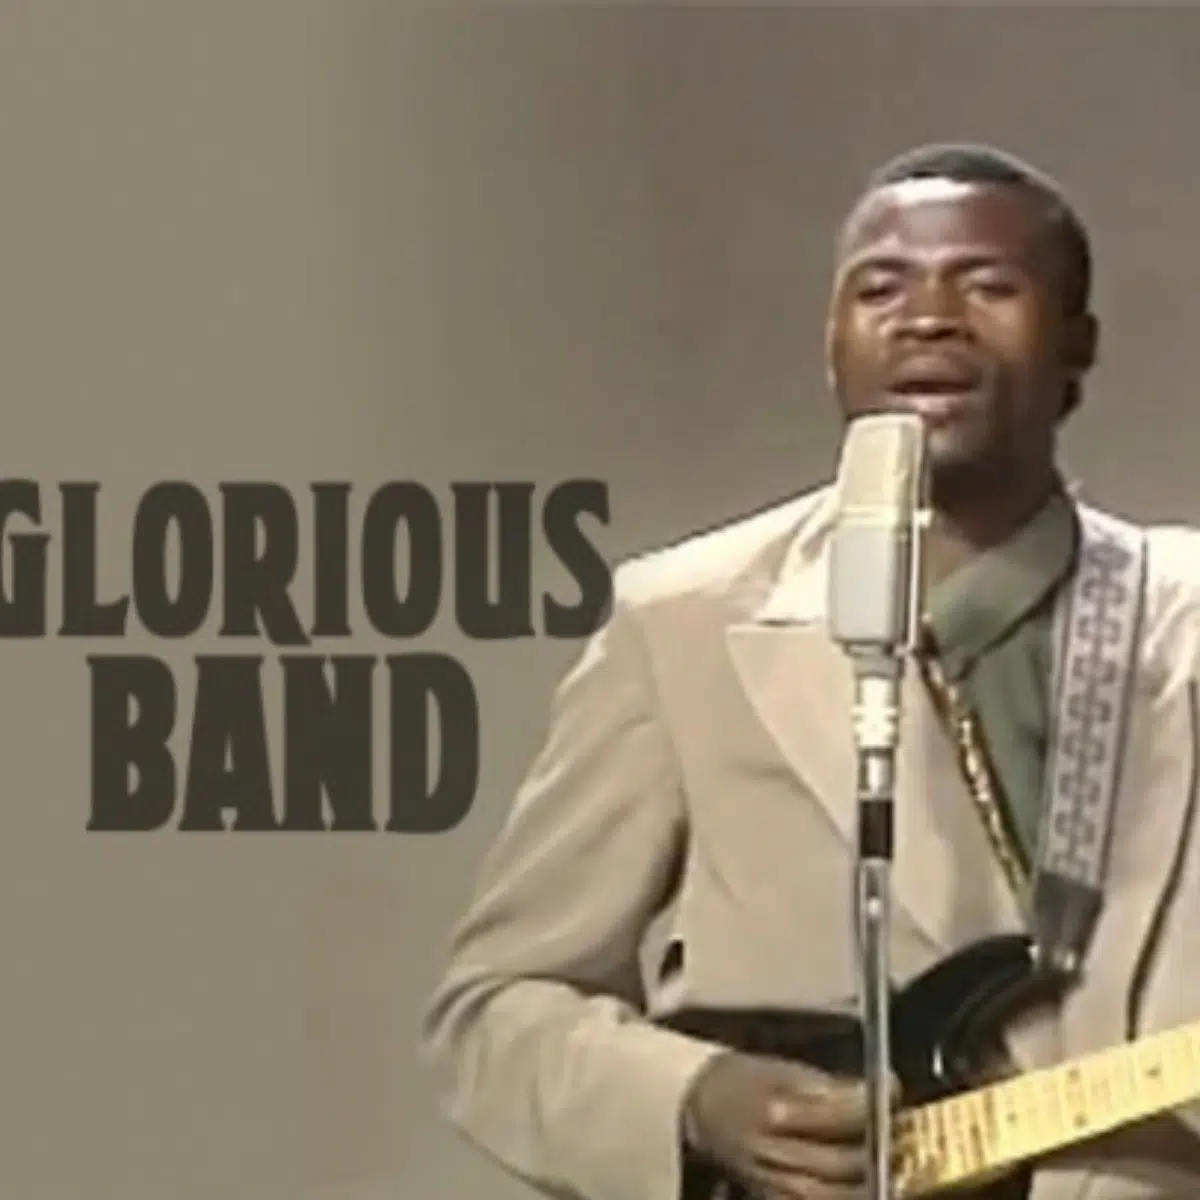 DOWNLOAD: Glorious band – “Ubututu” Mp3